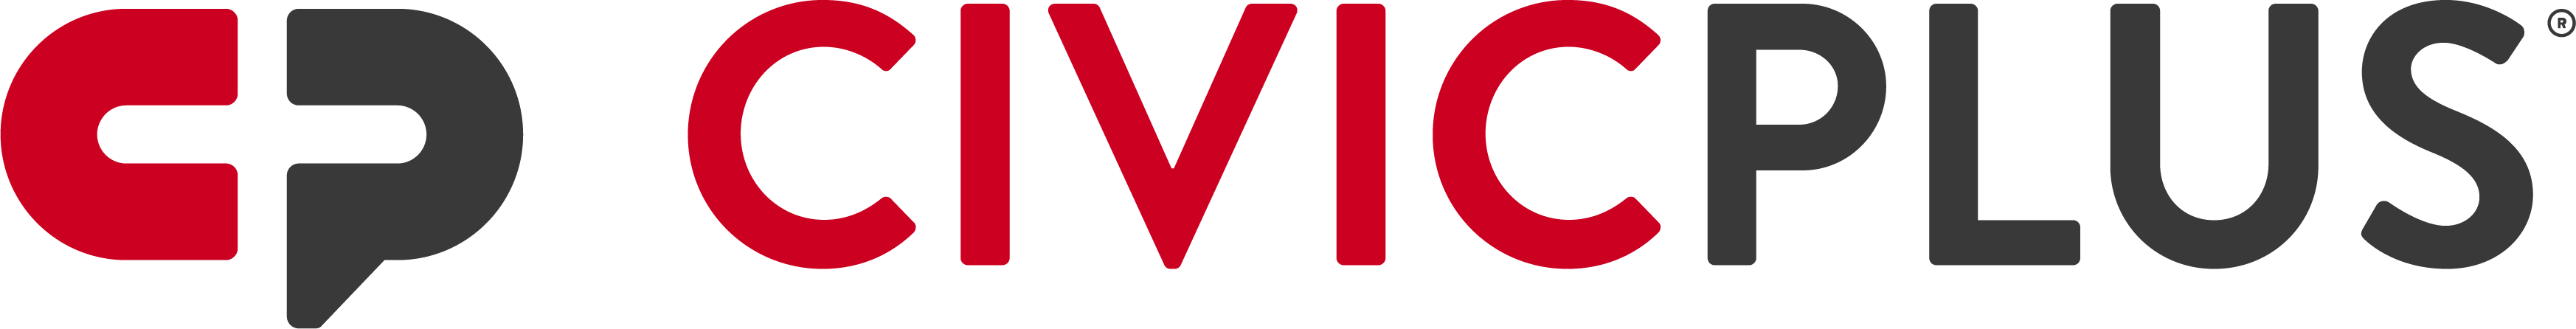 CivicPlus logo in color